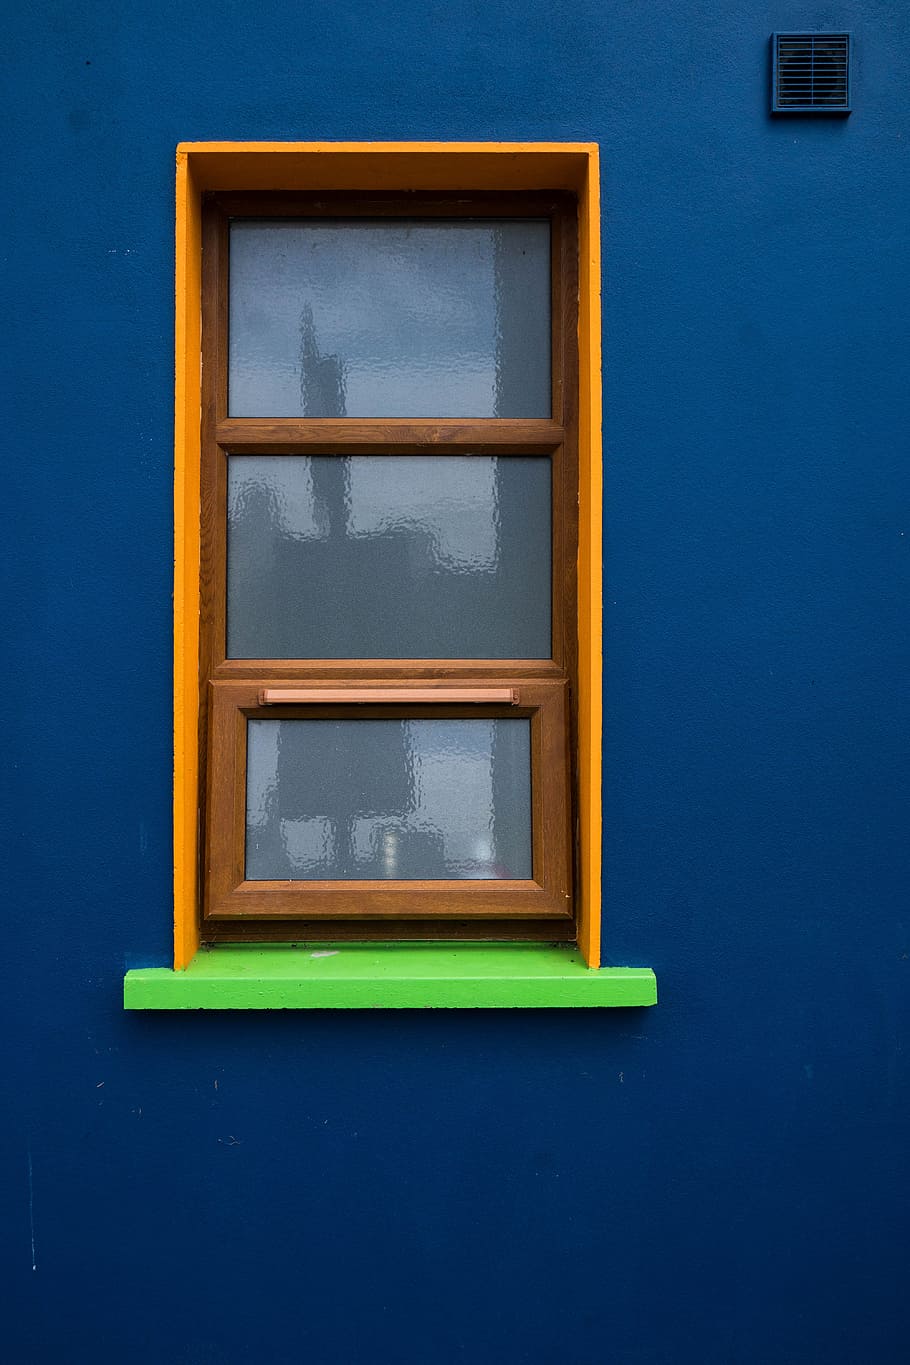 jendela, kaca, arsitektur, bangunan, cakram, biru, dinding, refleksi, mirroring, rumah